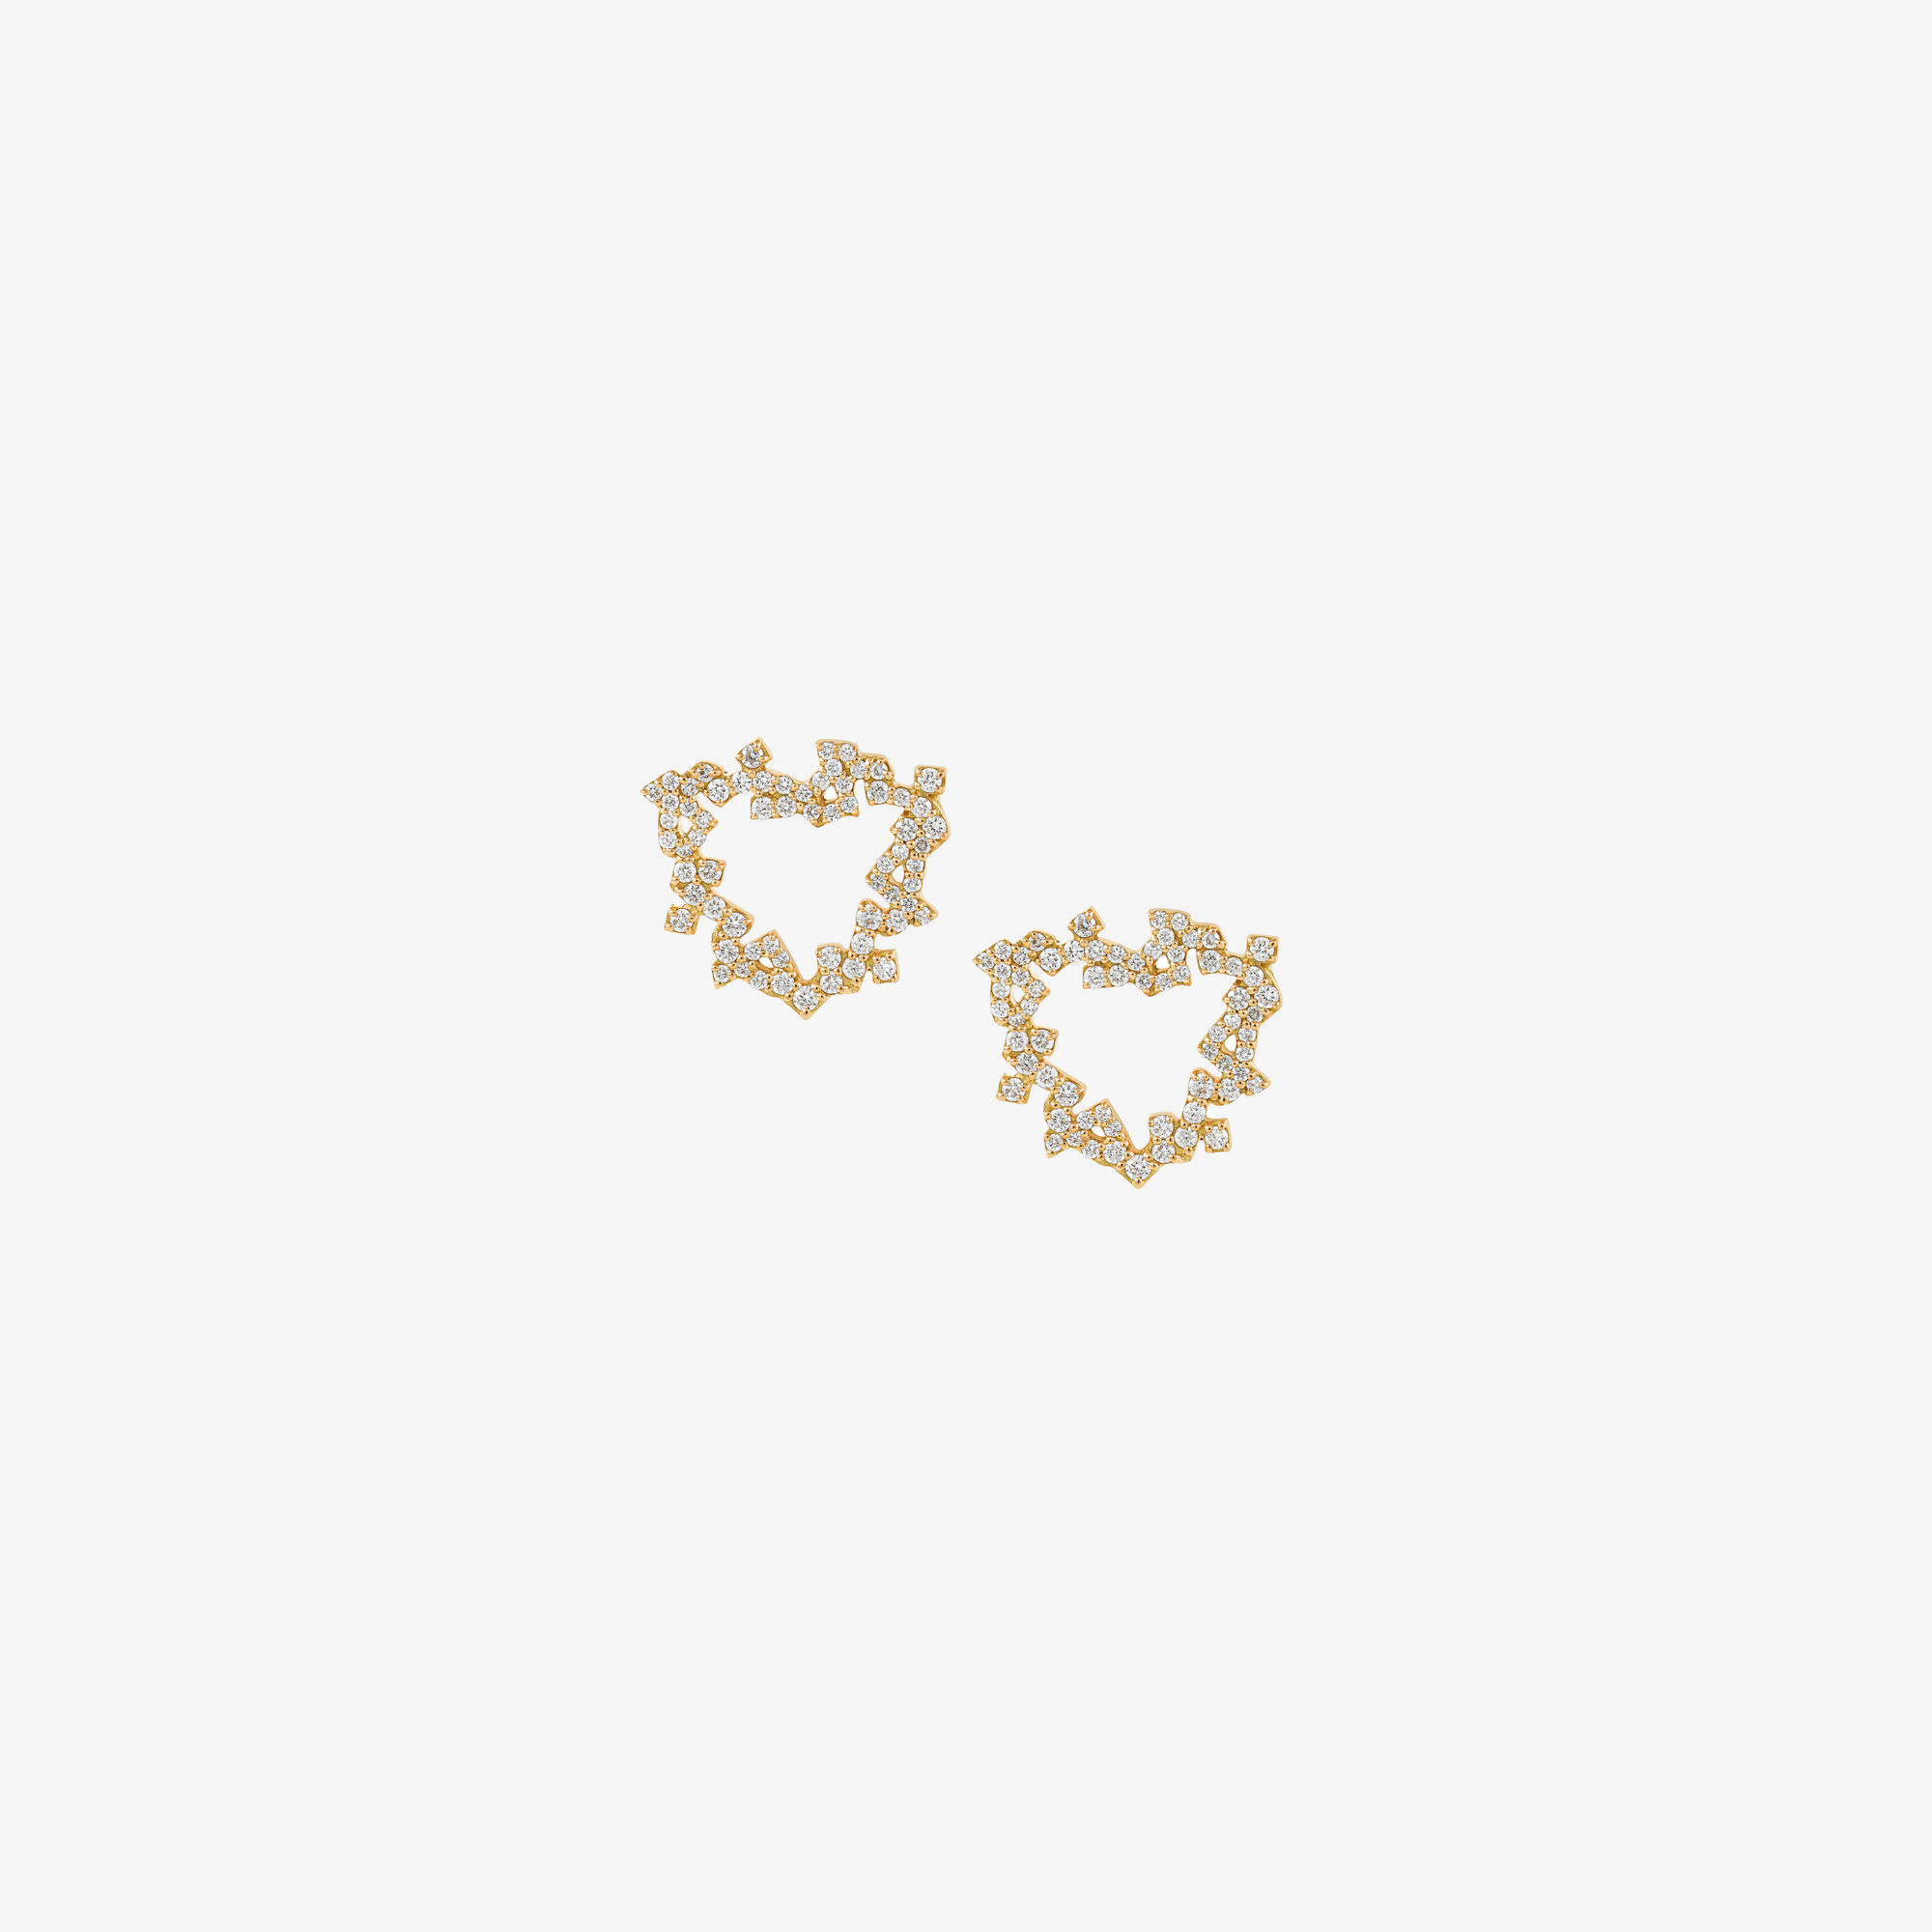 HOBB - Gold & Diamond "Love" Earrings